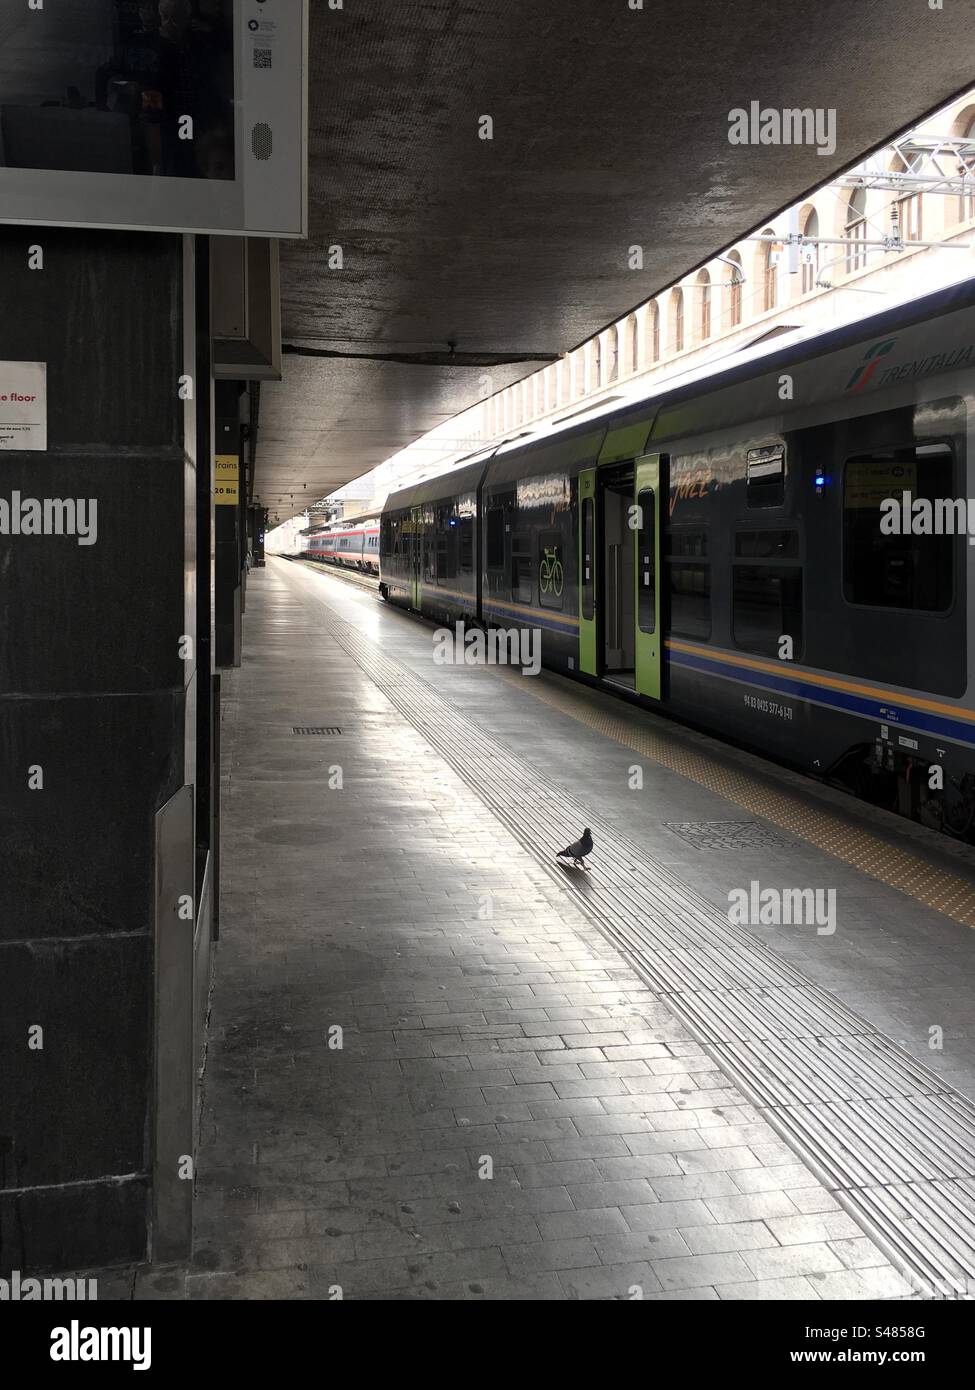 Marciapiede della stazione Termini di Roma, Italia, vuoto, senza viaggiatori. Solo un piccione. Binari. Treni regionali in partenza. Stock Photo